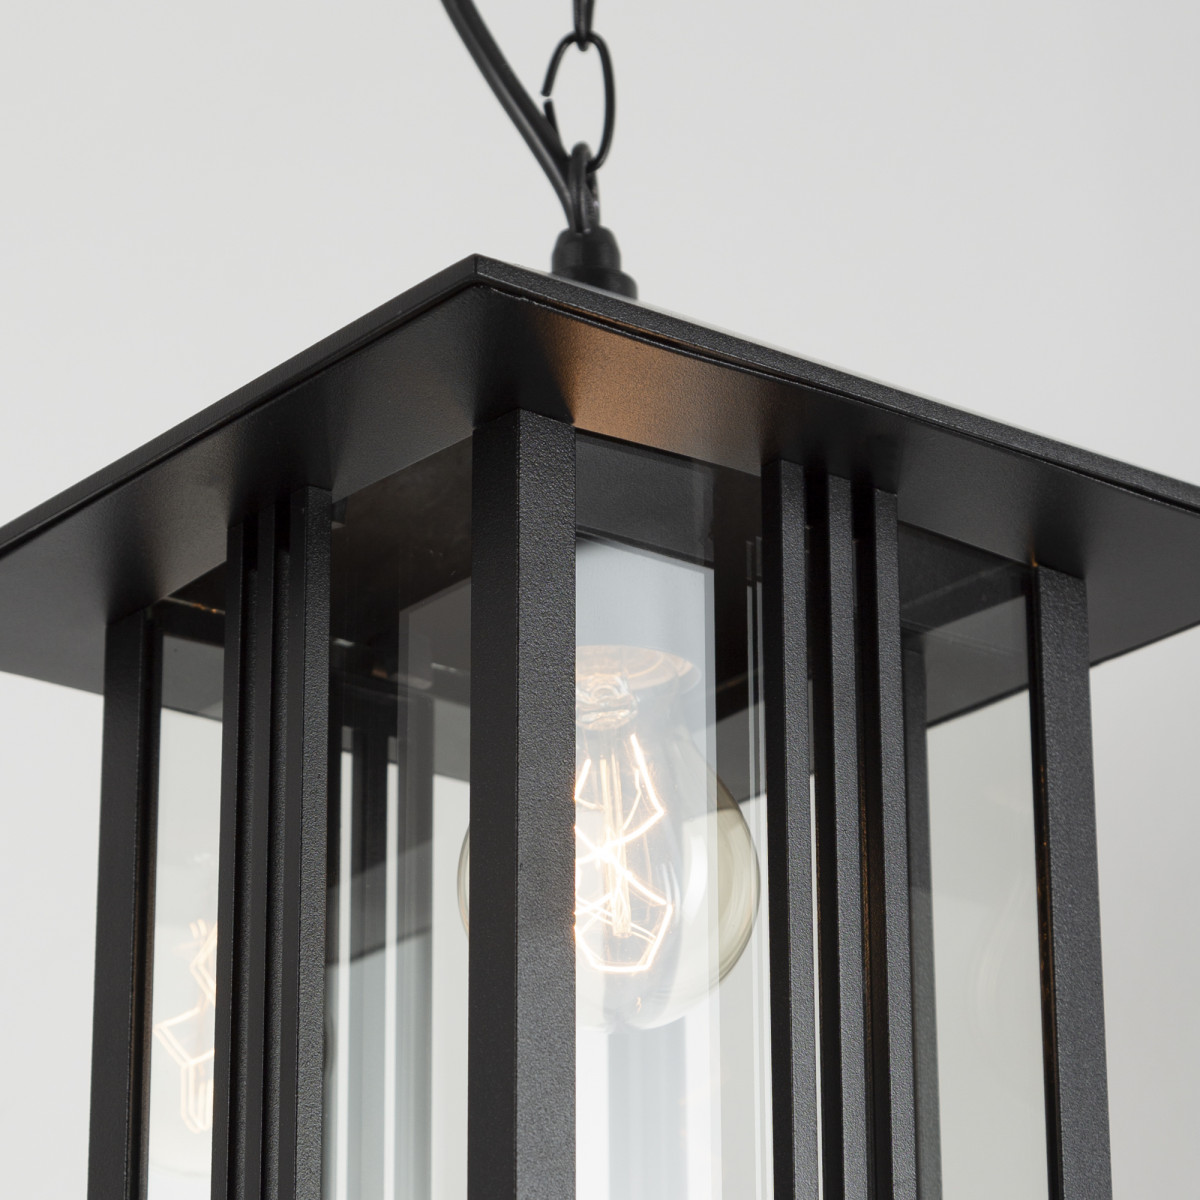 zwarte hanglamp aan ketting inclusief plafondplaat, heldere beglazing, e27 fitting, verandalamp, lamp aan ketting voor buiten onder afdak